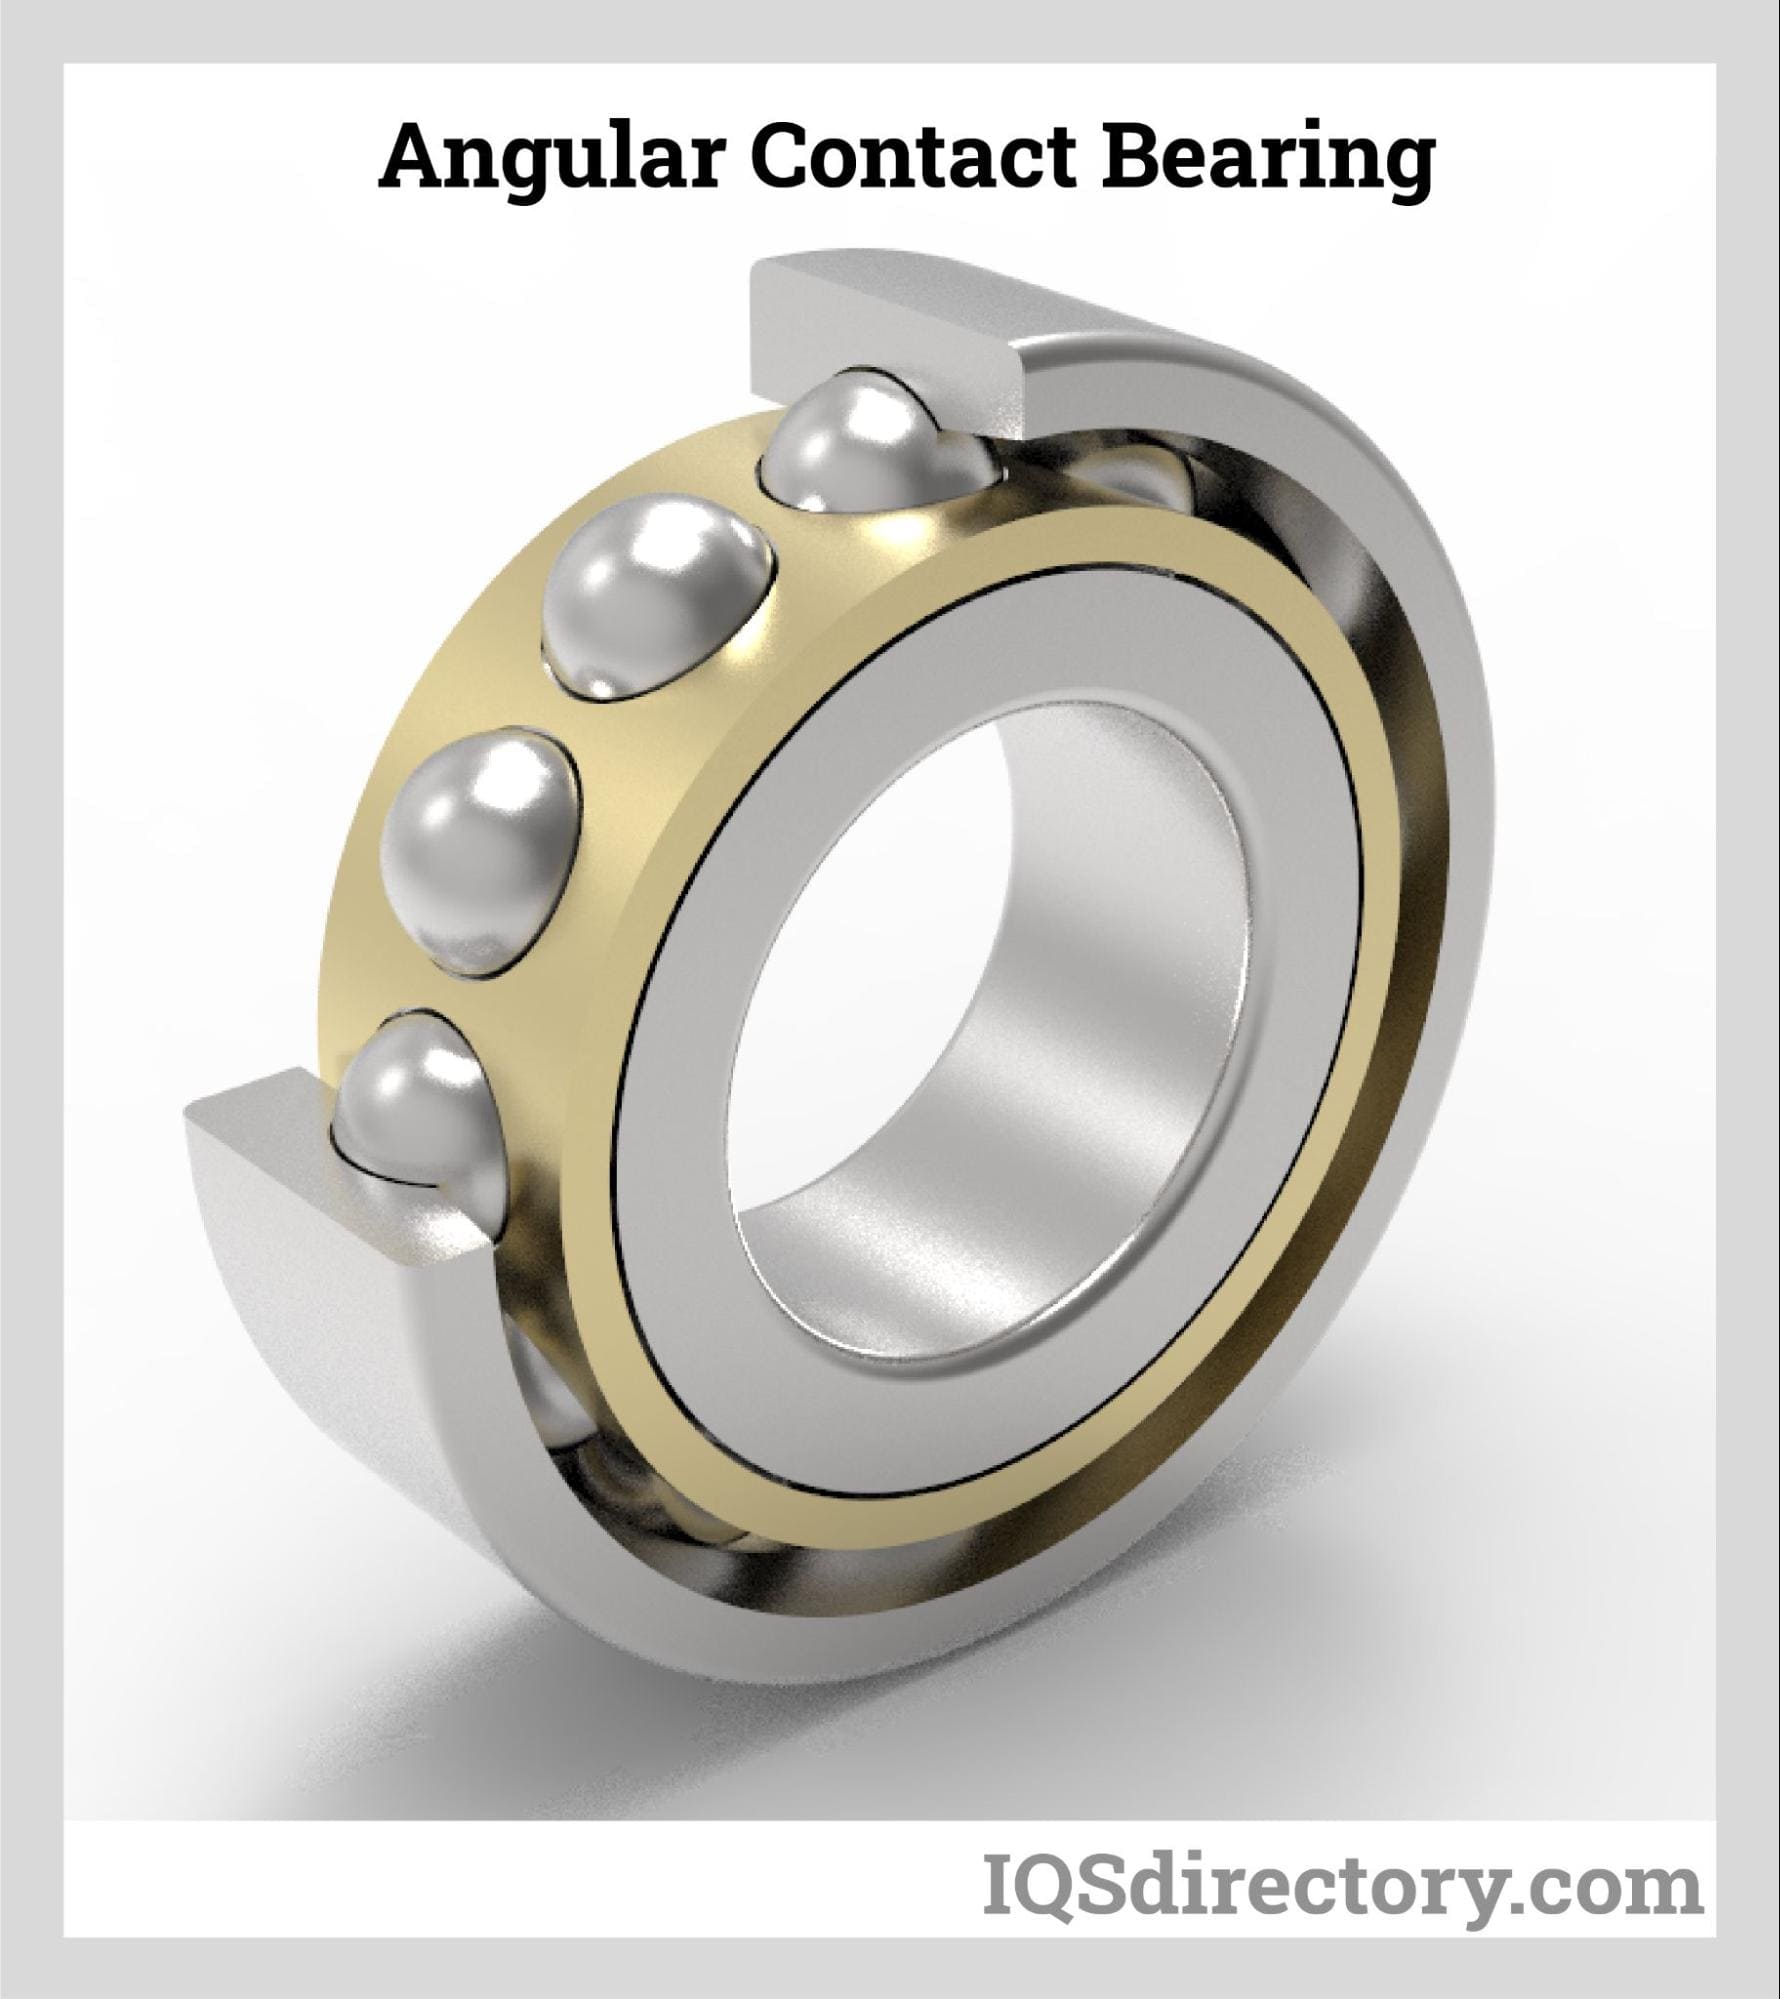 Angular Contact Bearing